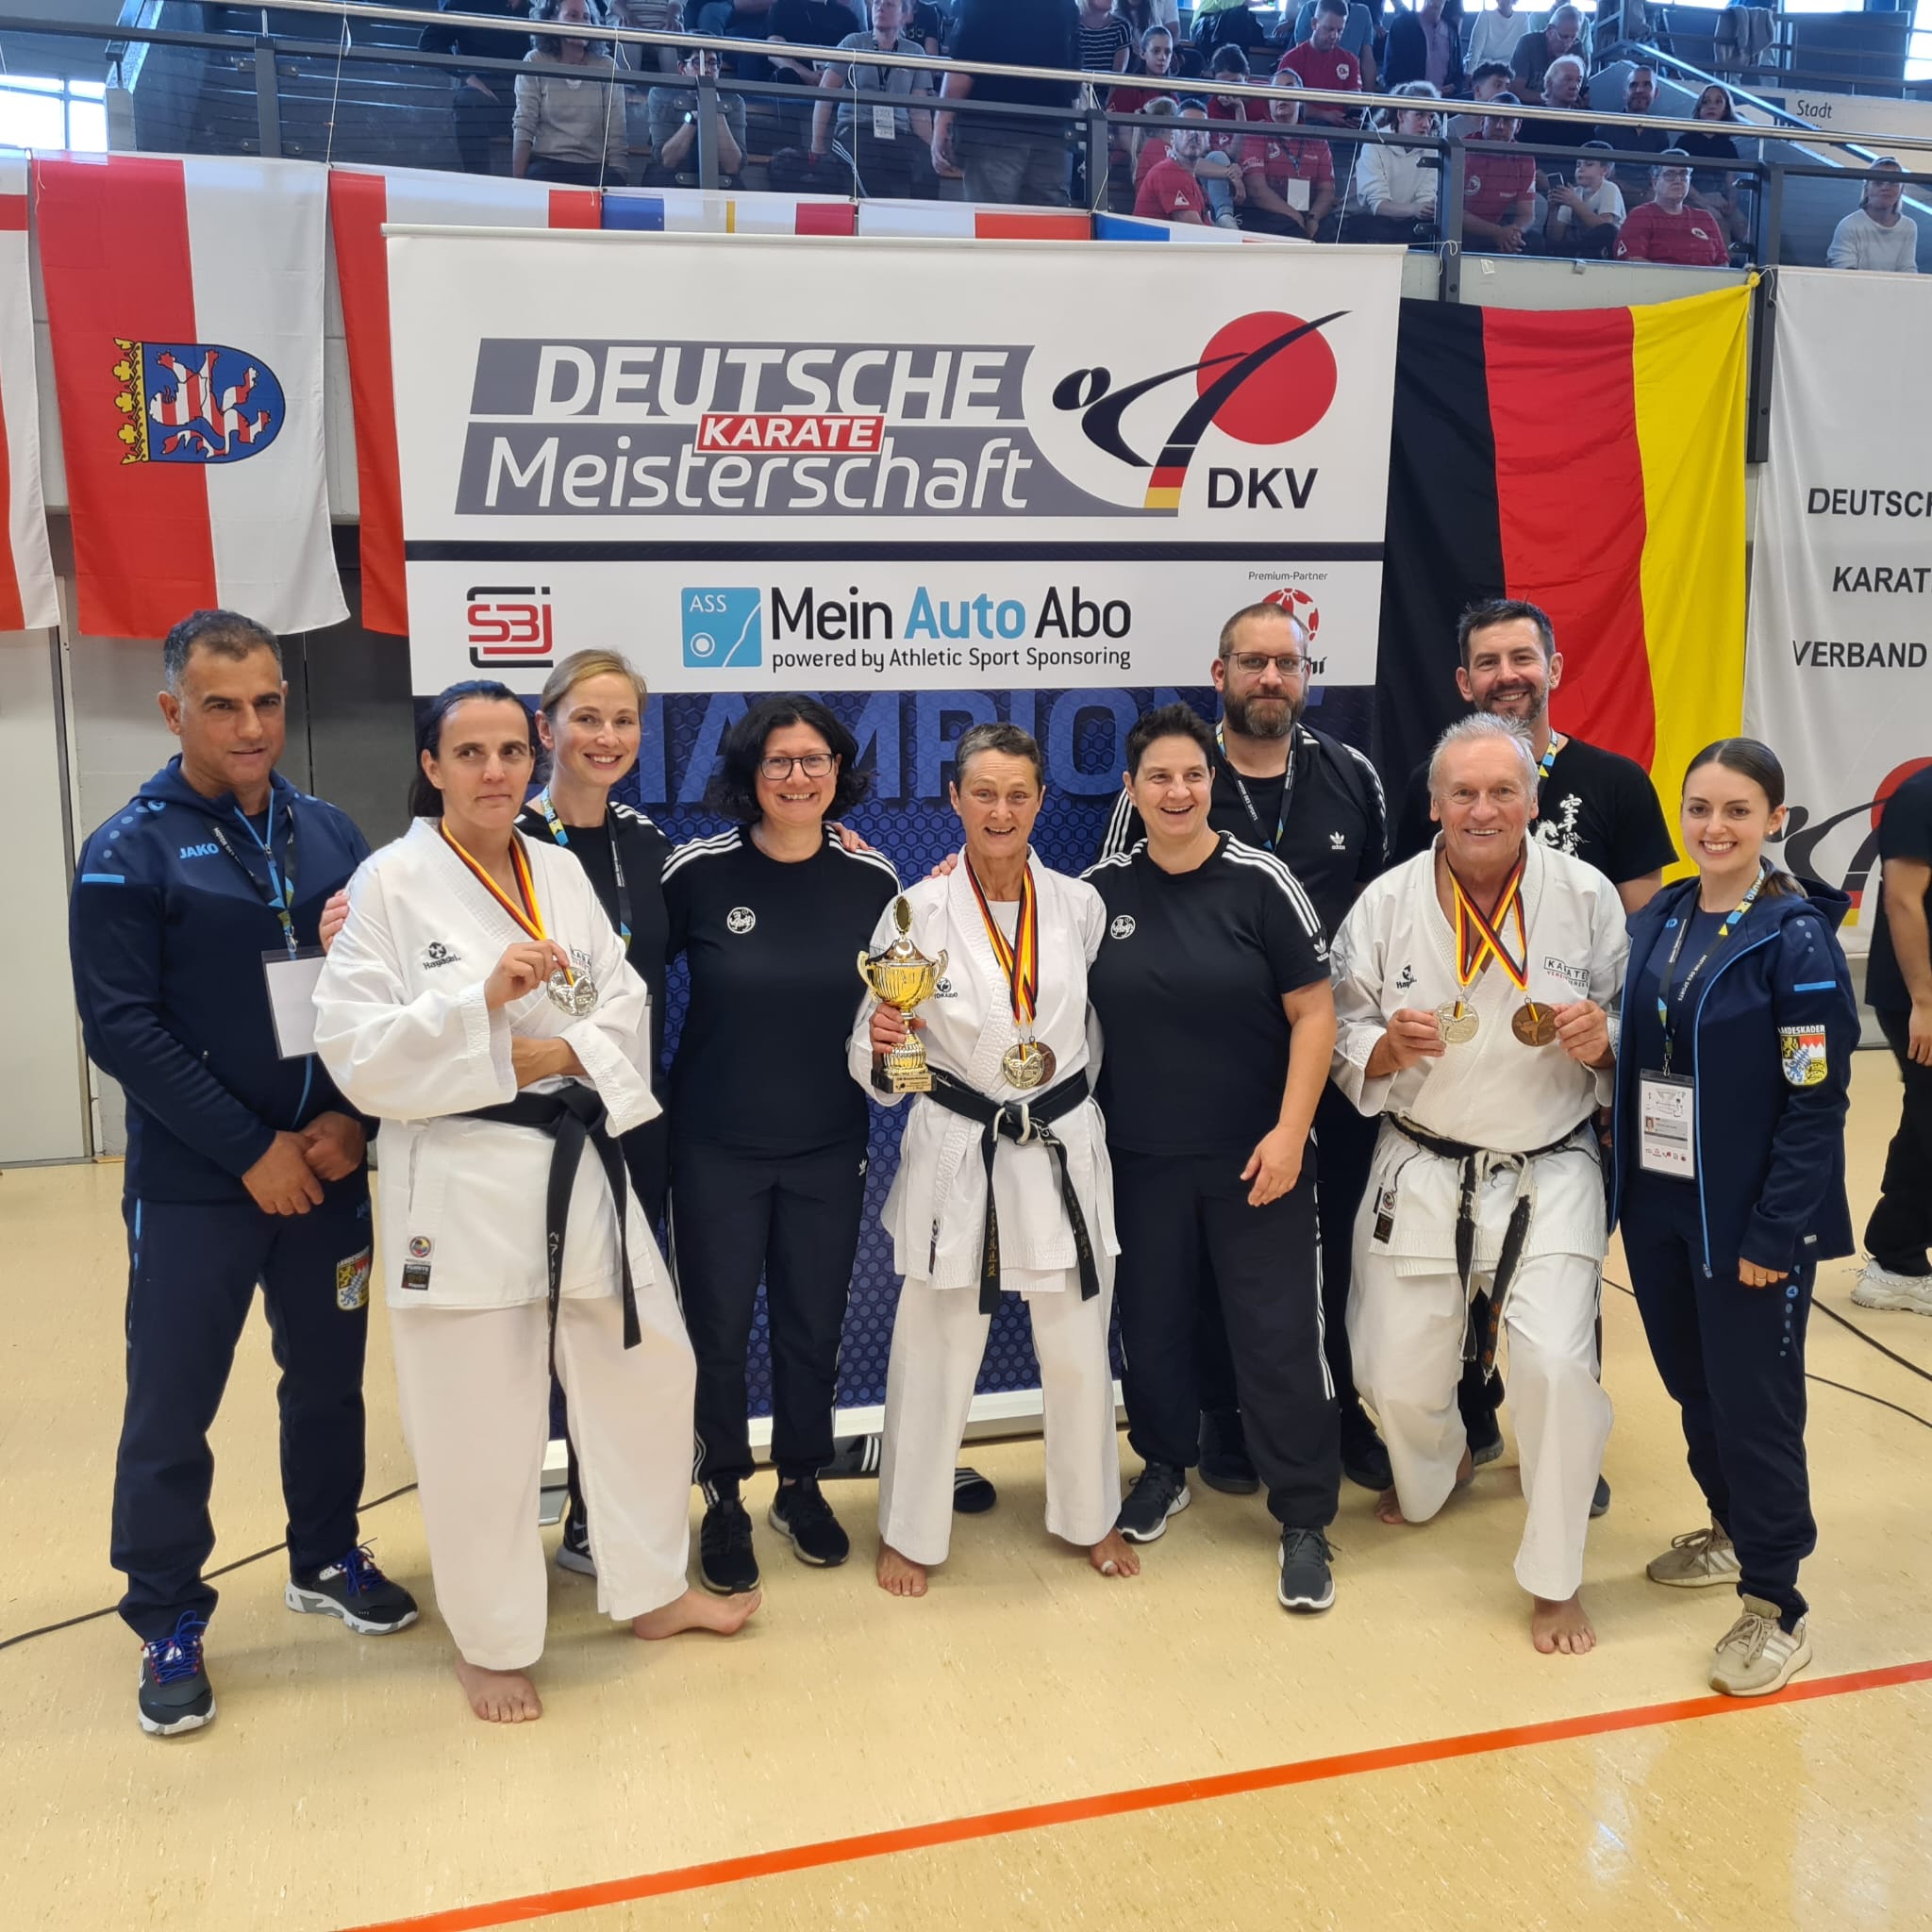 Ein höchst erfolgreicher Tag für das Master Team des Karate Vereins Herzo